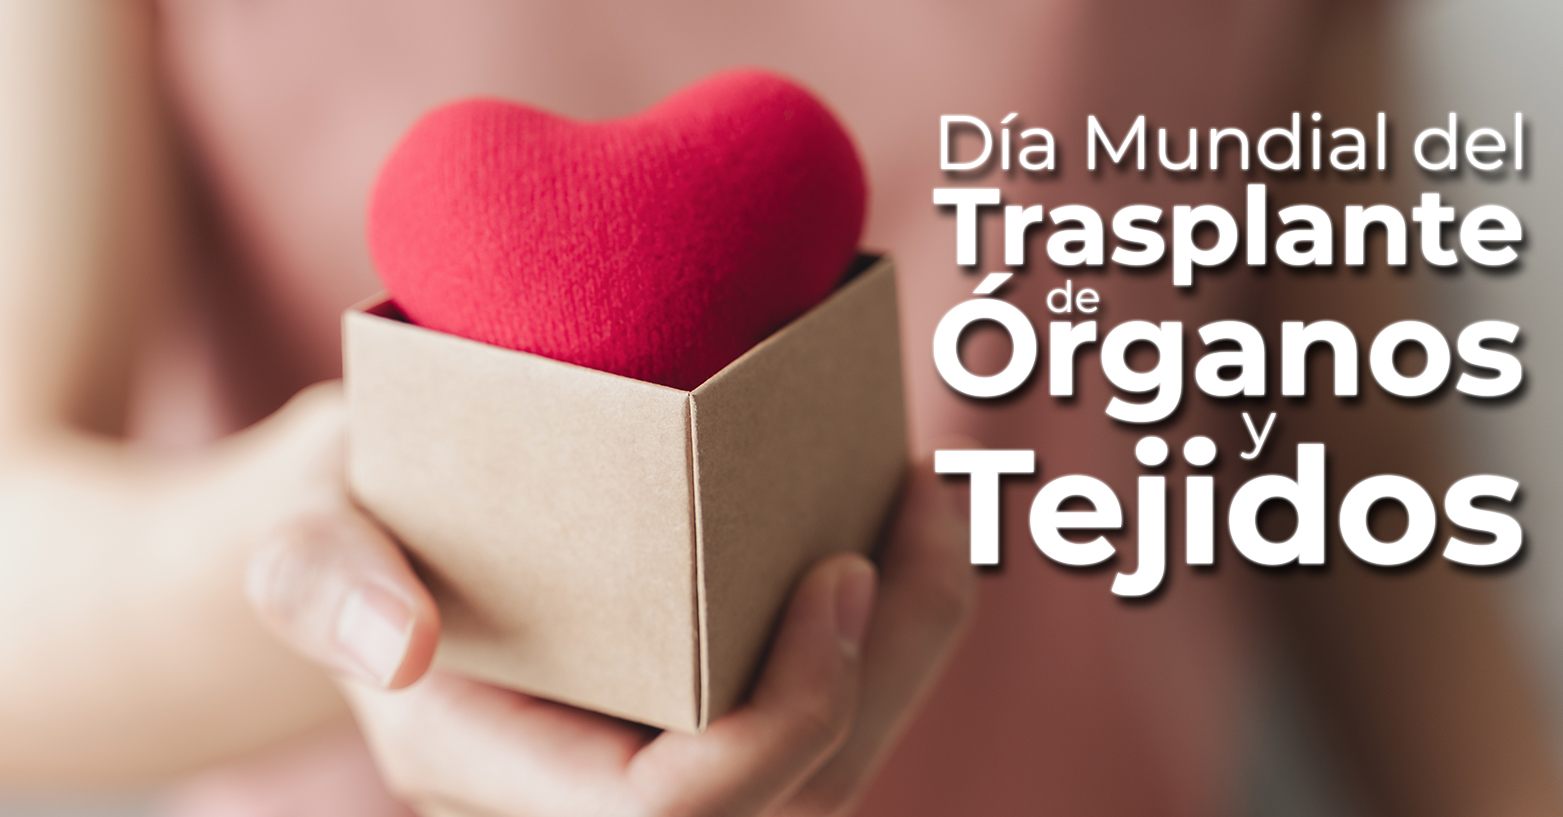 27 de Febrero | Día Mundial del Trasplante de Órganos y Tejidos